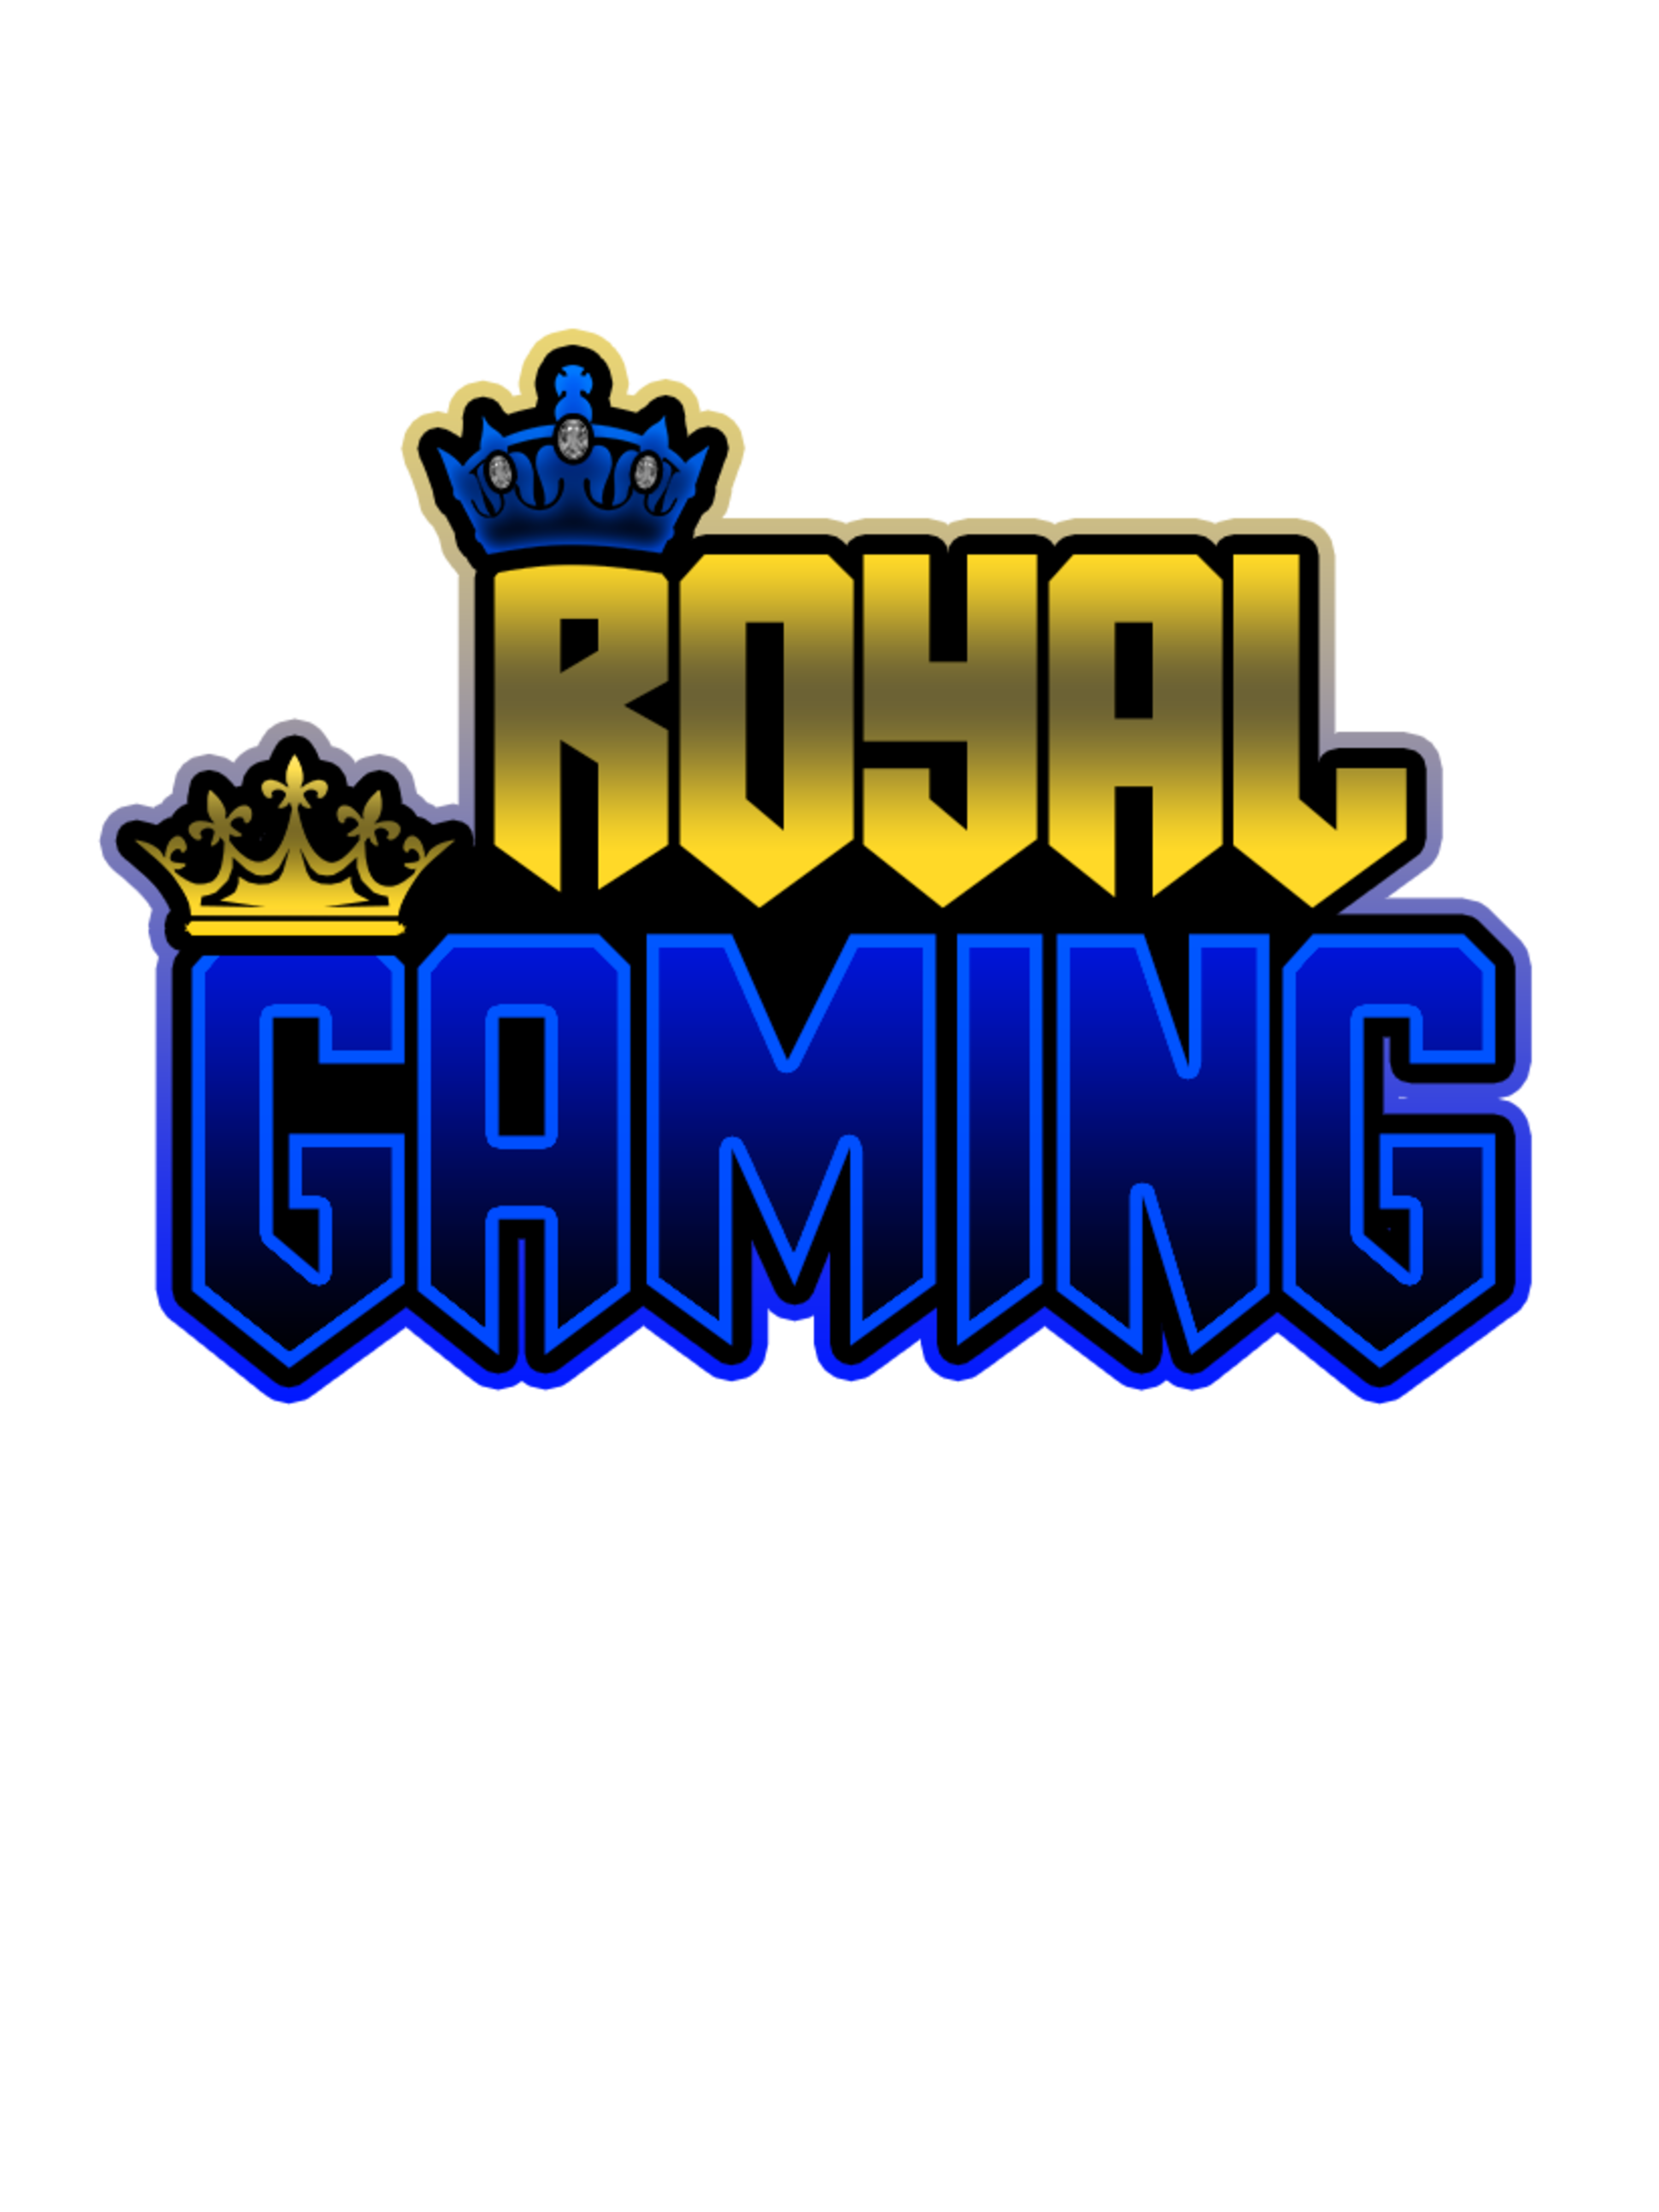 The Royal's Gaming